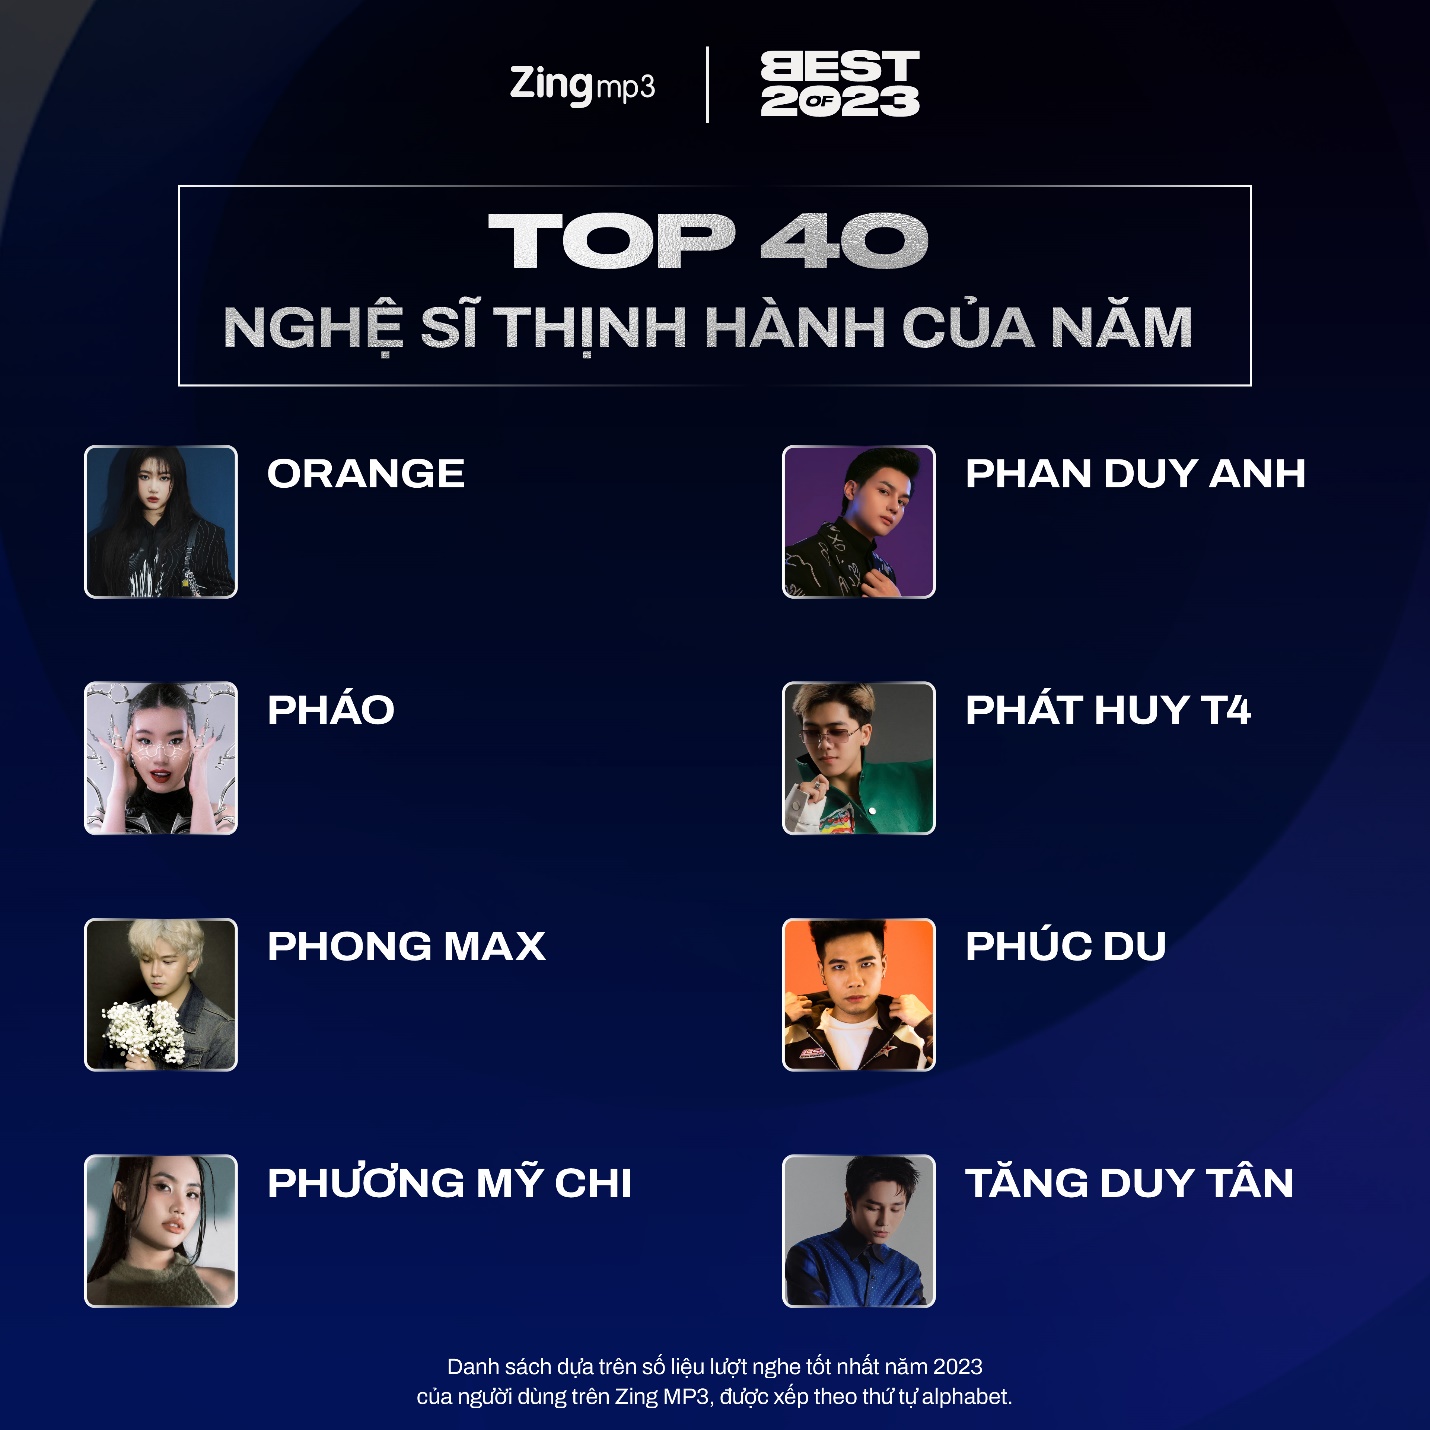 Top 40 nghệ sĩ và bài hát thịnh hành nhất Vpop năm 2023: Tăng Duy Tân lập cú đúp - Ảnh 5.